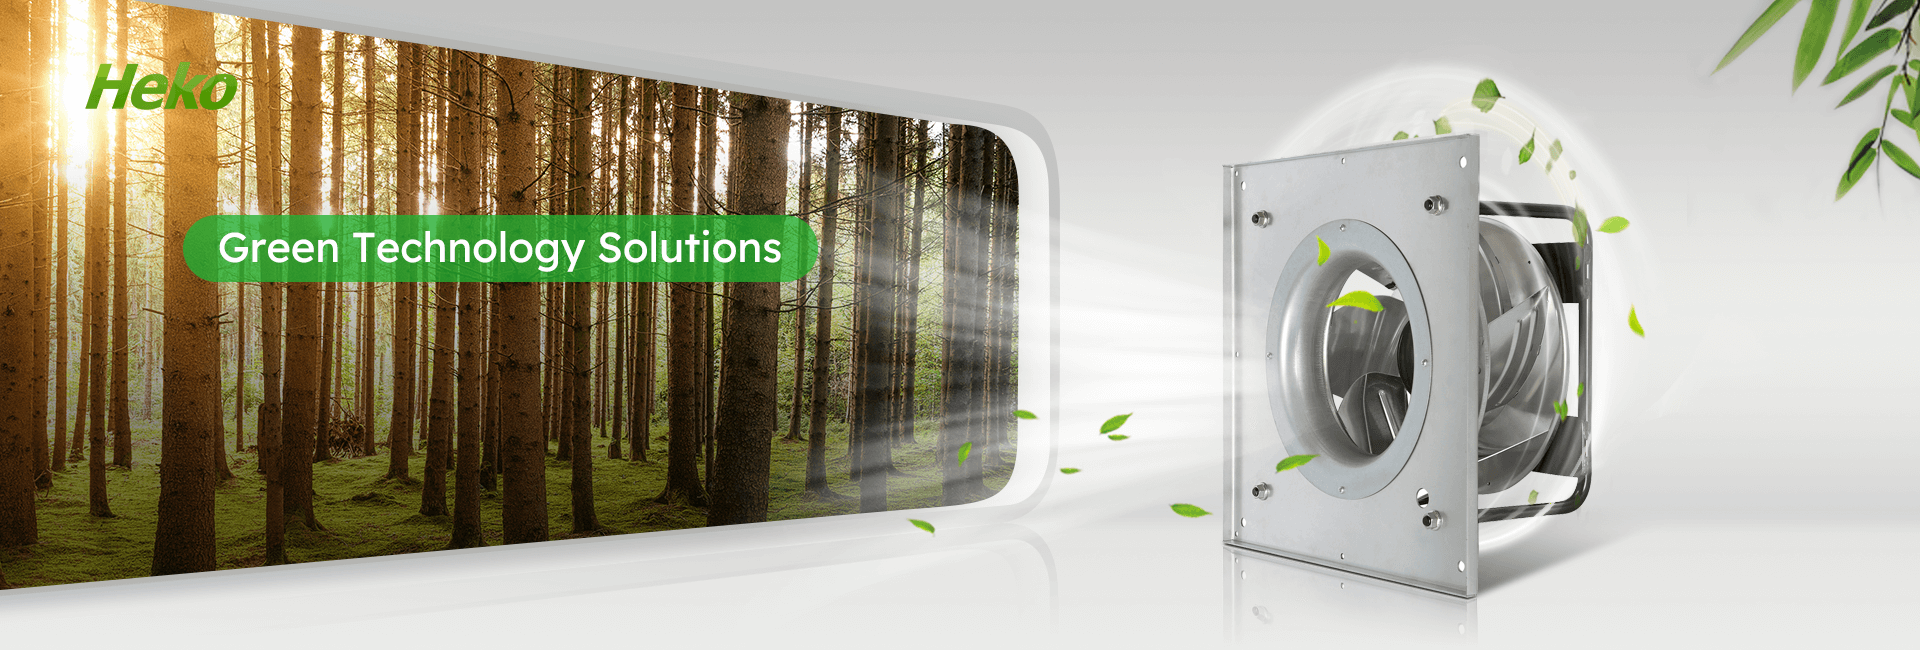 Green technology solutions-HEKO